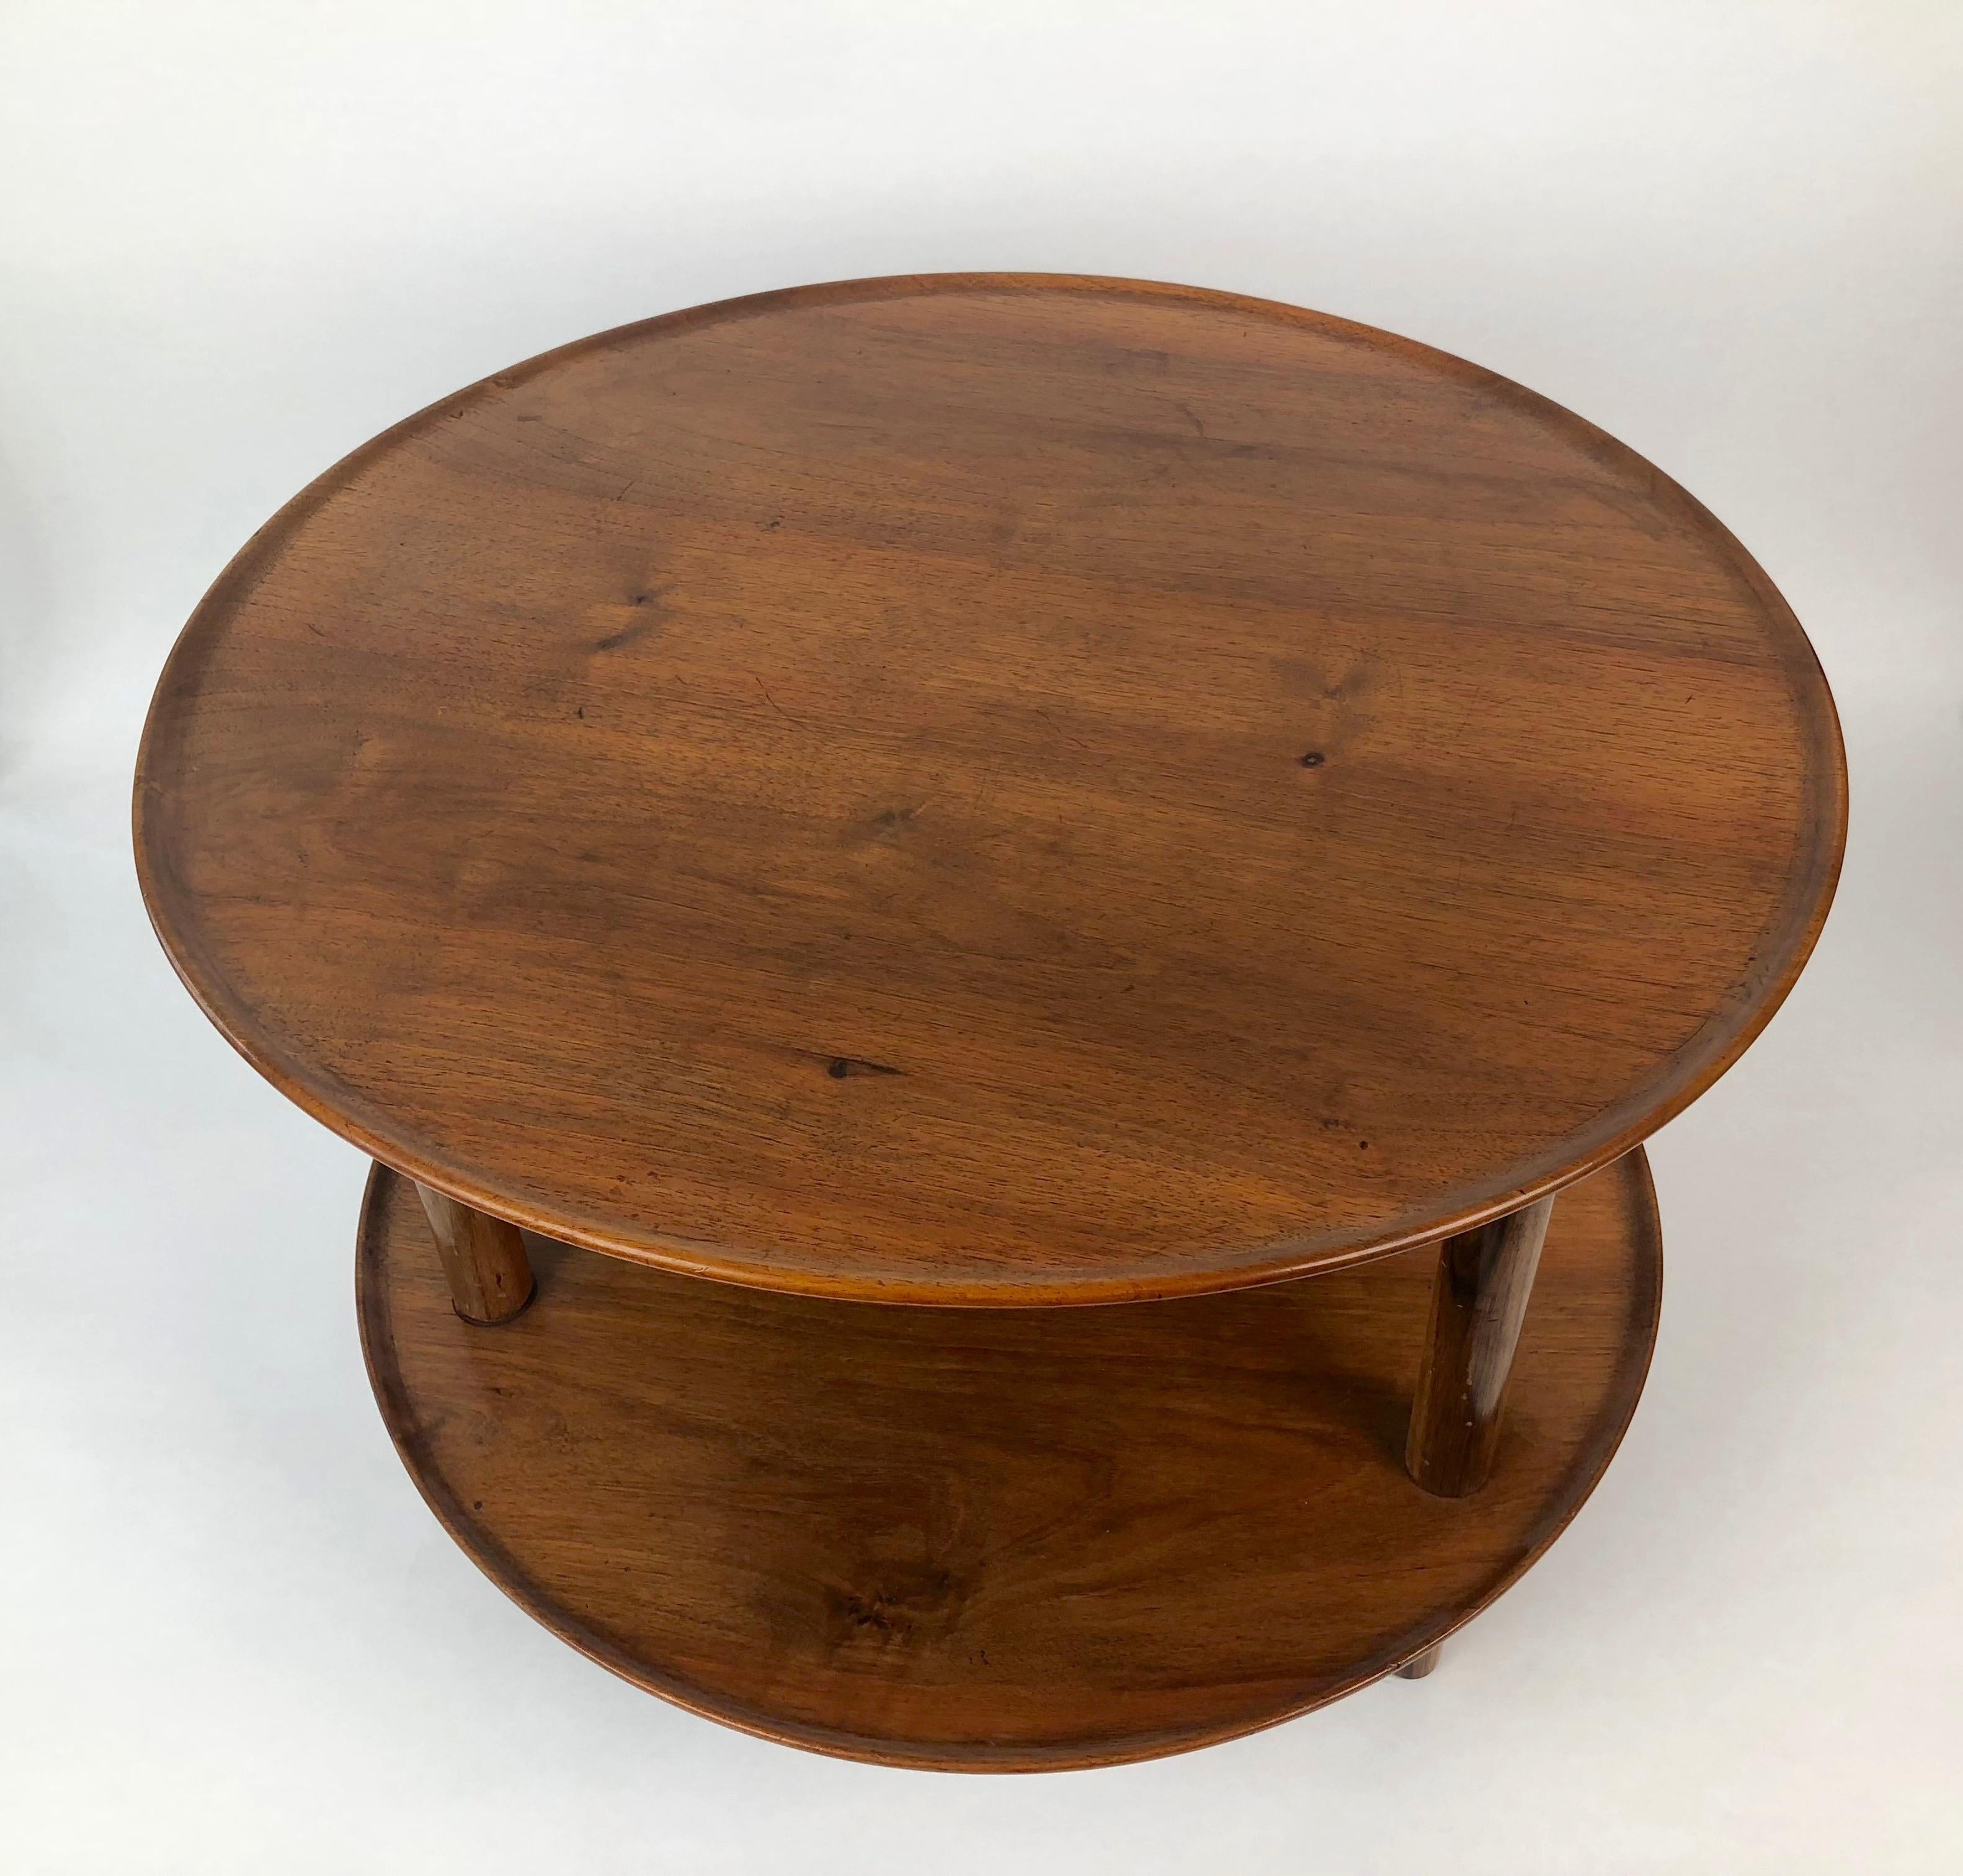 Tisch aus massivem Nussbaumholz mit zwei Ebenen, entworfen von Josef Frank in den 1930er Jahren.
Es ist optisch wunderschön und wenn man es mit der Hand berührt, spürt man die Feinheit der Handwerkskunst.
Der Tisch ist in sehr gutem